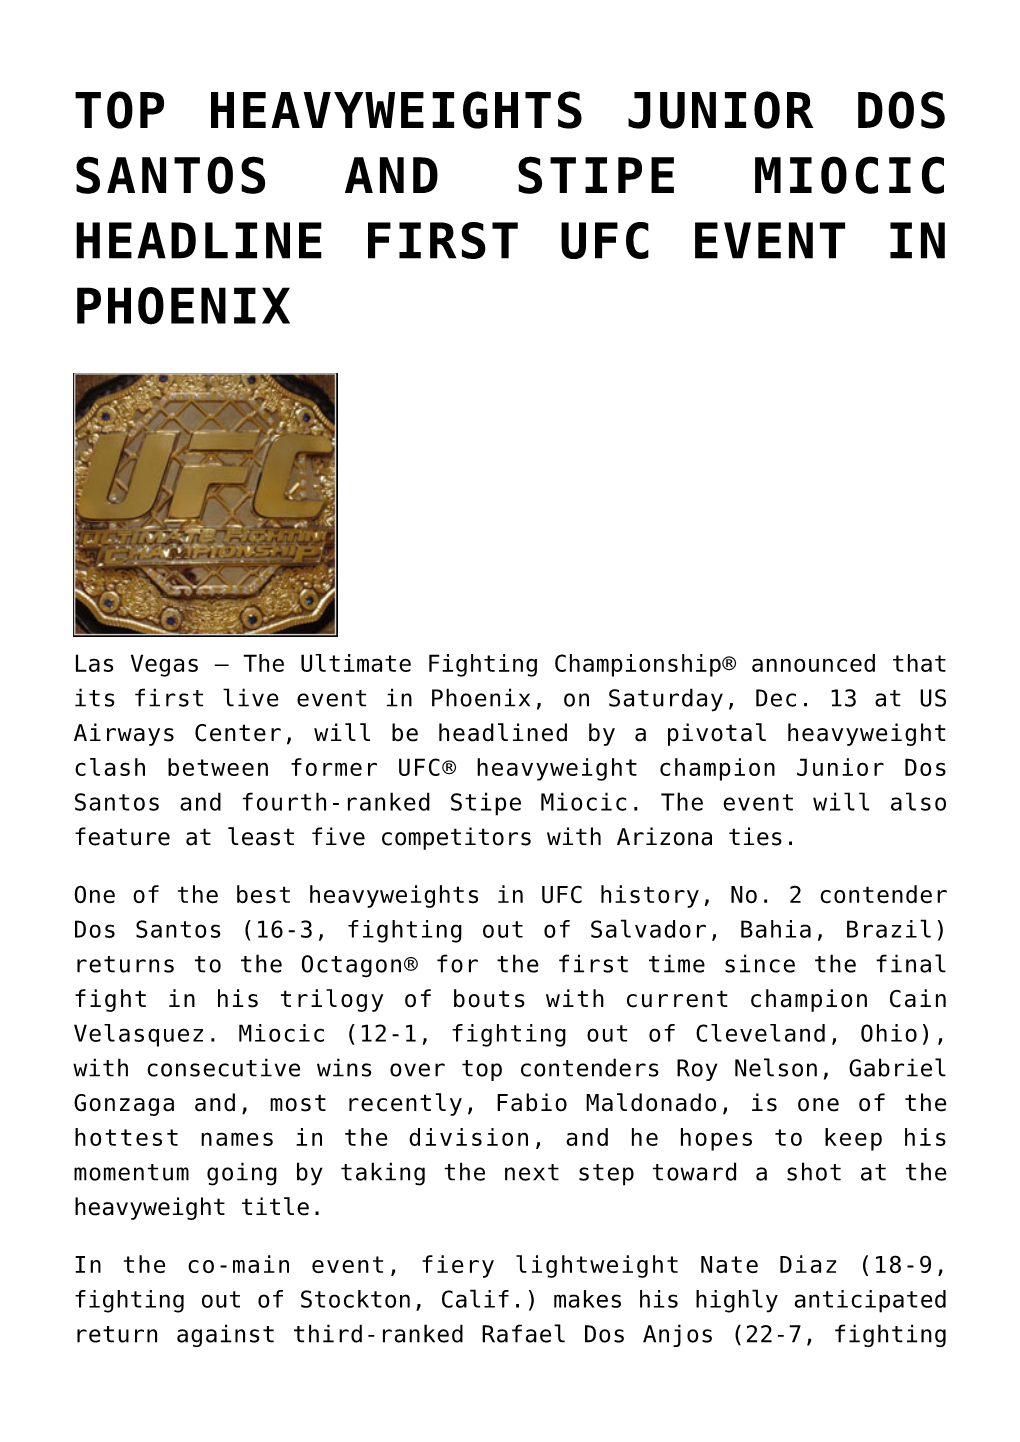 Top Heavyweights Junior Dos Santos and Stipe Miocic Headline First Ufc Event in Phoenix